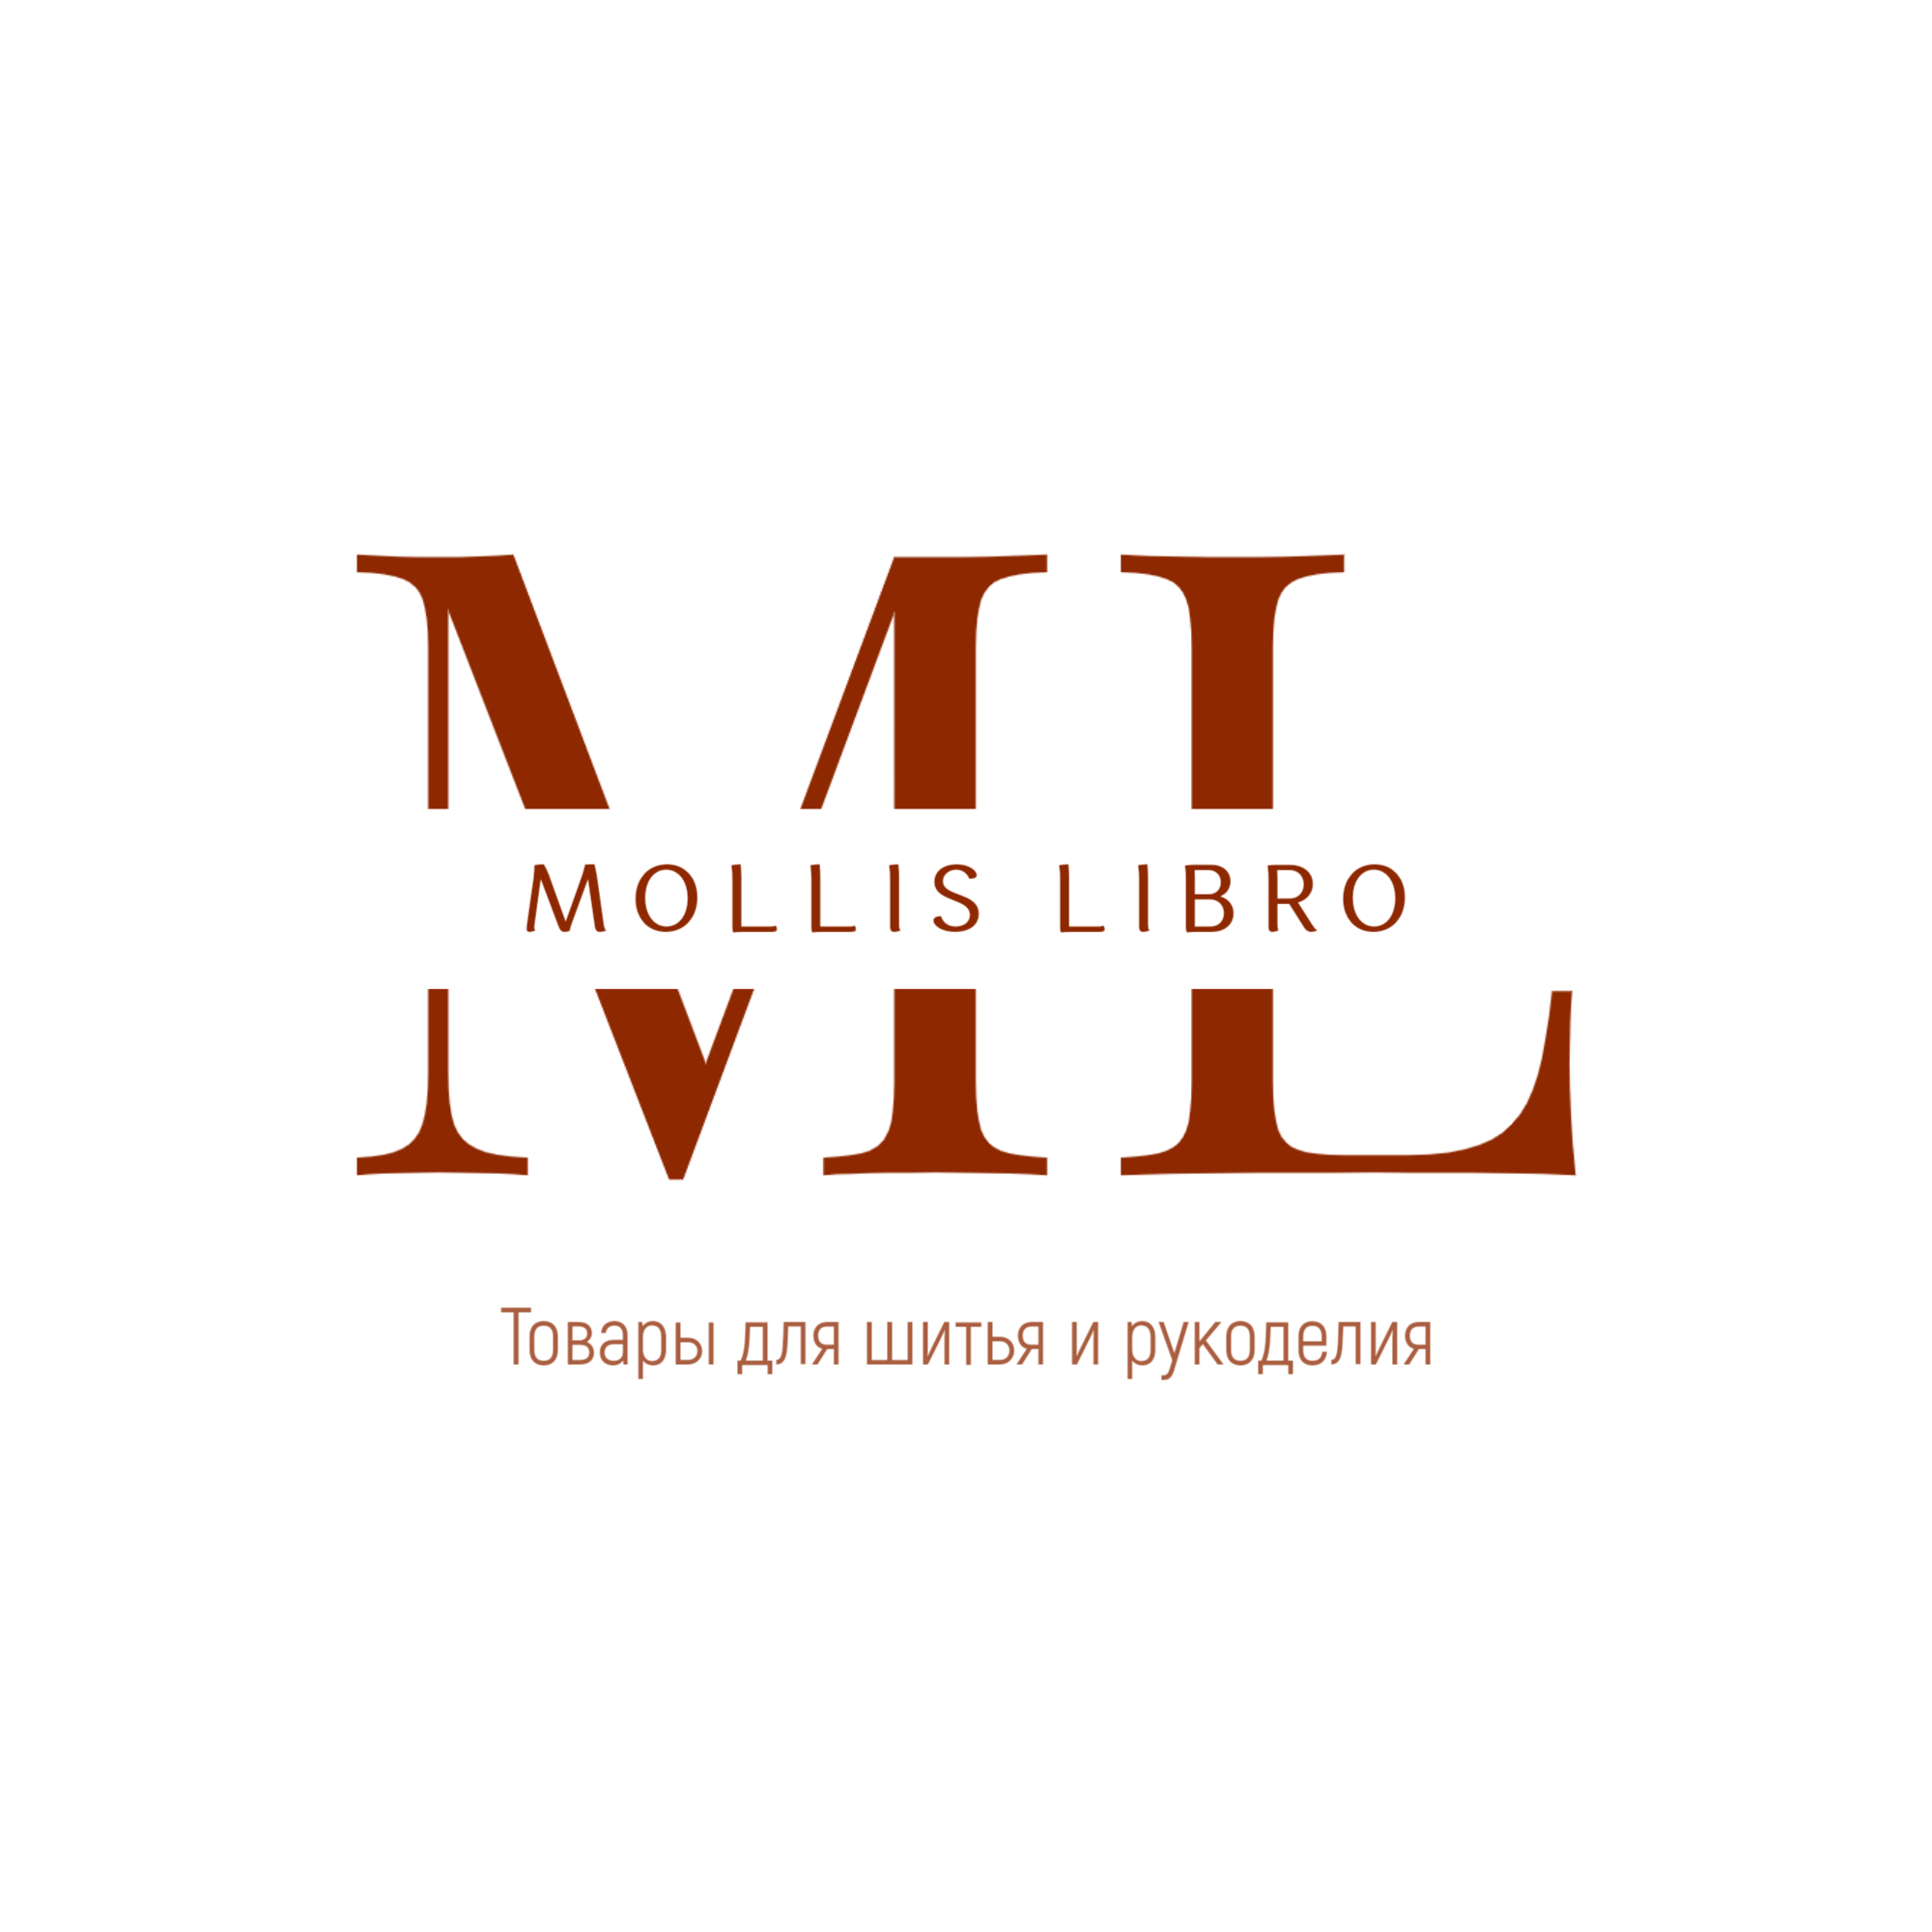 Интернет магазин MollisLibro (фетр, детские ткани, велкроткань, инструменты).